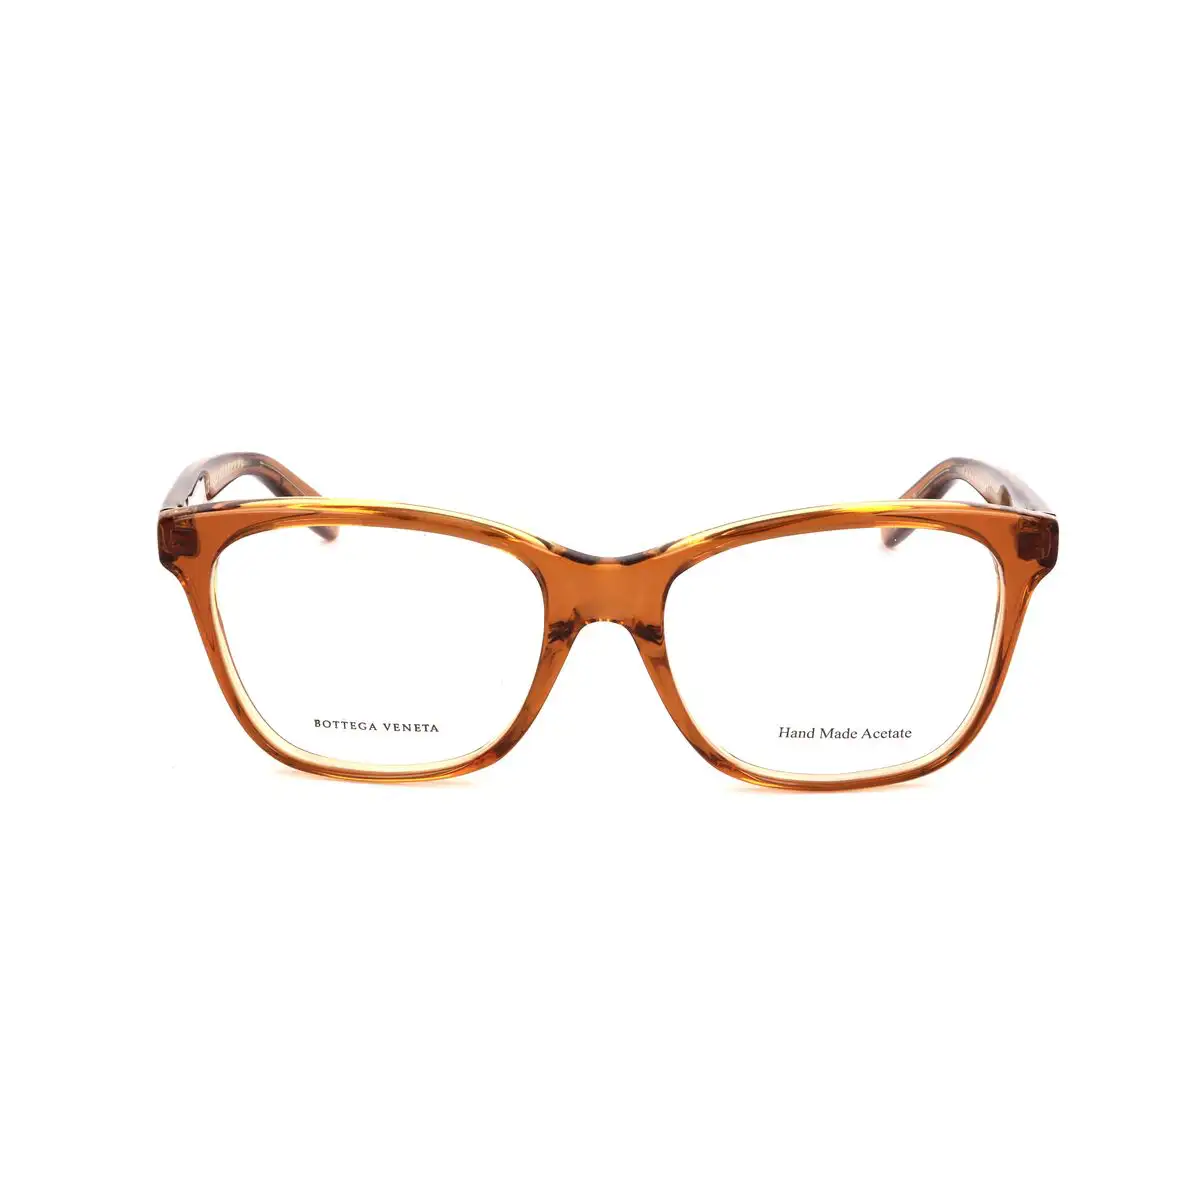 Monture de lunettes femme bottega veneta bv 244 f2i marron jaune_4679. DIAYTAR SENEGAL - Votre Plateforme Shopping de Confiance. Naviguez à travers nos rayons et choisissez des produits fiables qui répondent à vos besoins quotidiens.